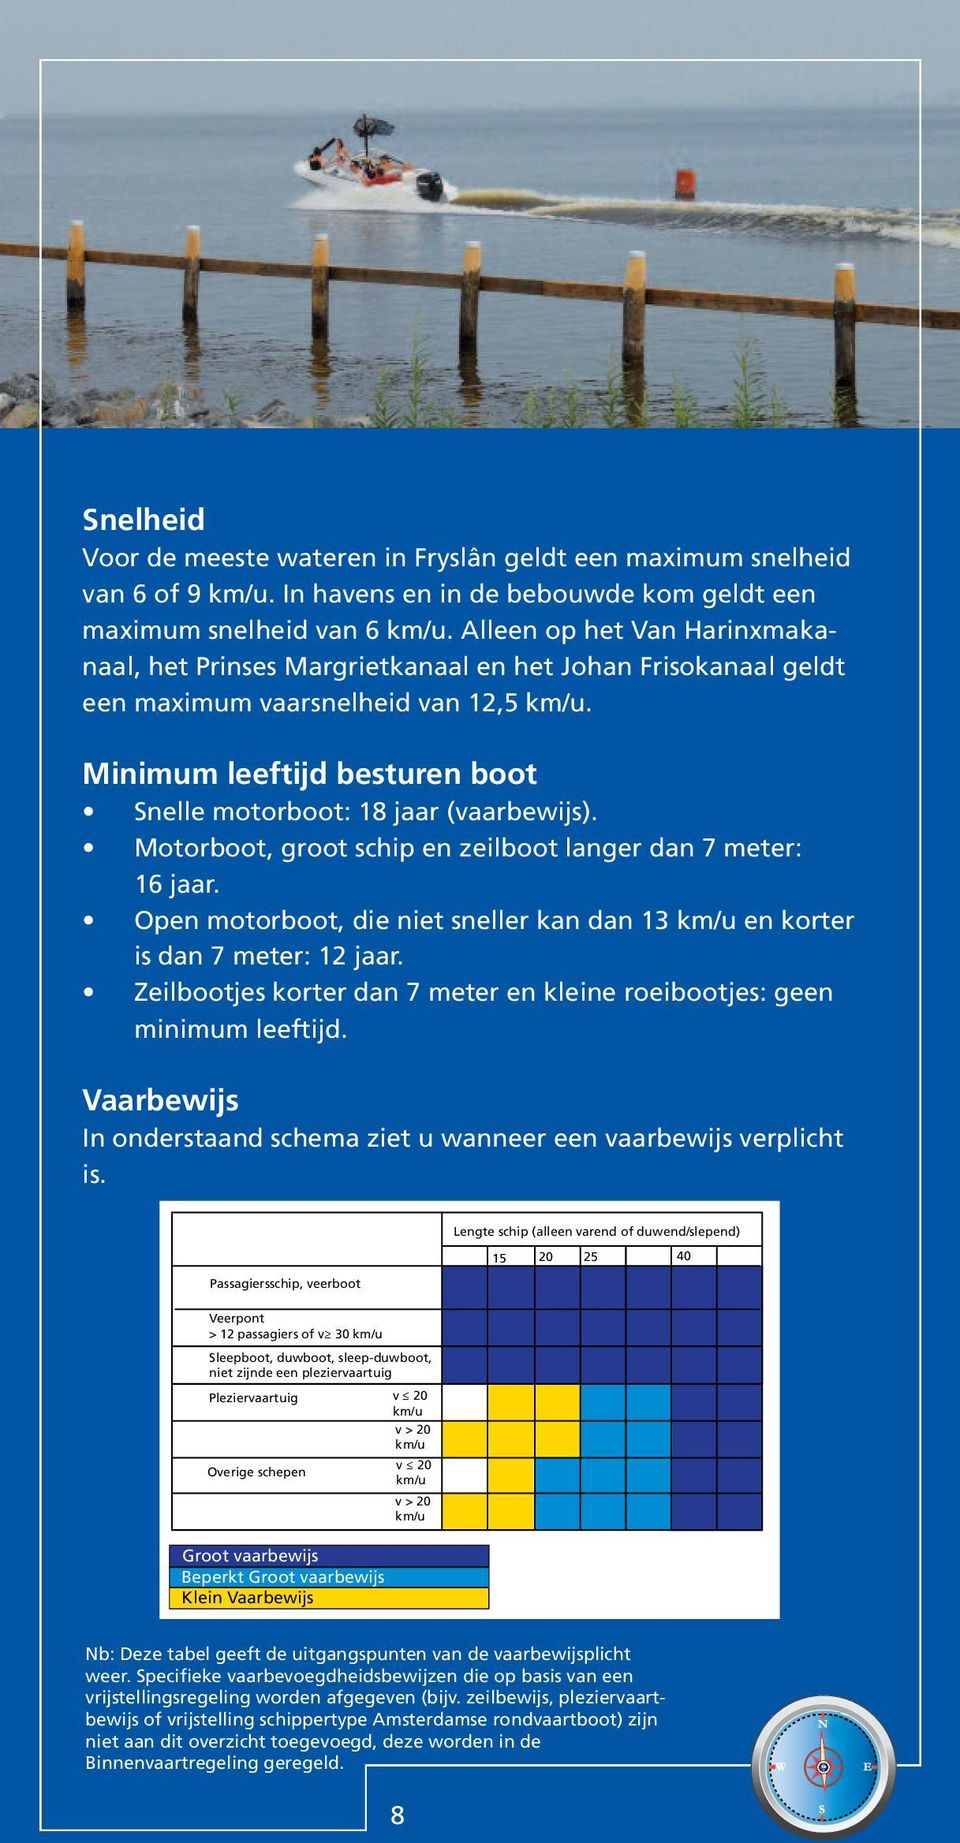 TZ Snelheid Voor de meeste wateren in Fryslân geldt een maximum snelheid van 6 of 9 km/u. In havens en in de bebouwde kom geldt een maximum snelheid van 6 km/u.